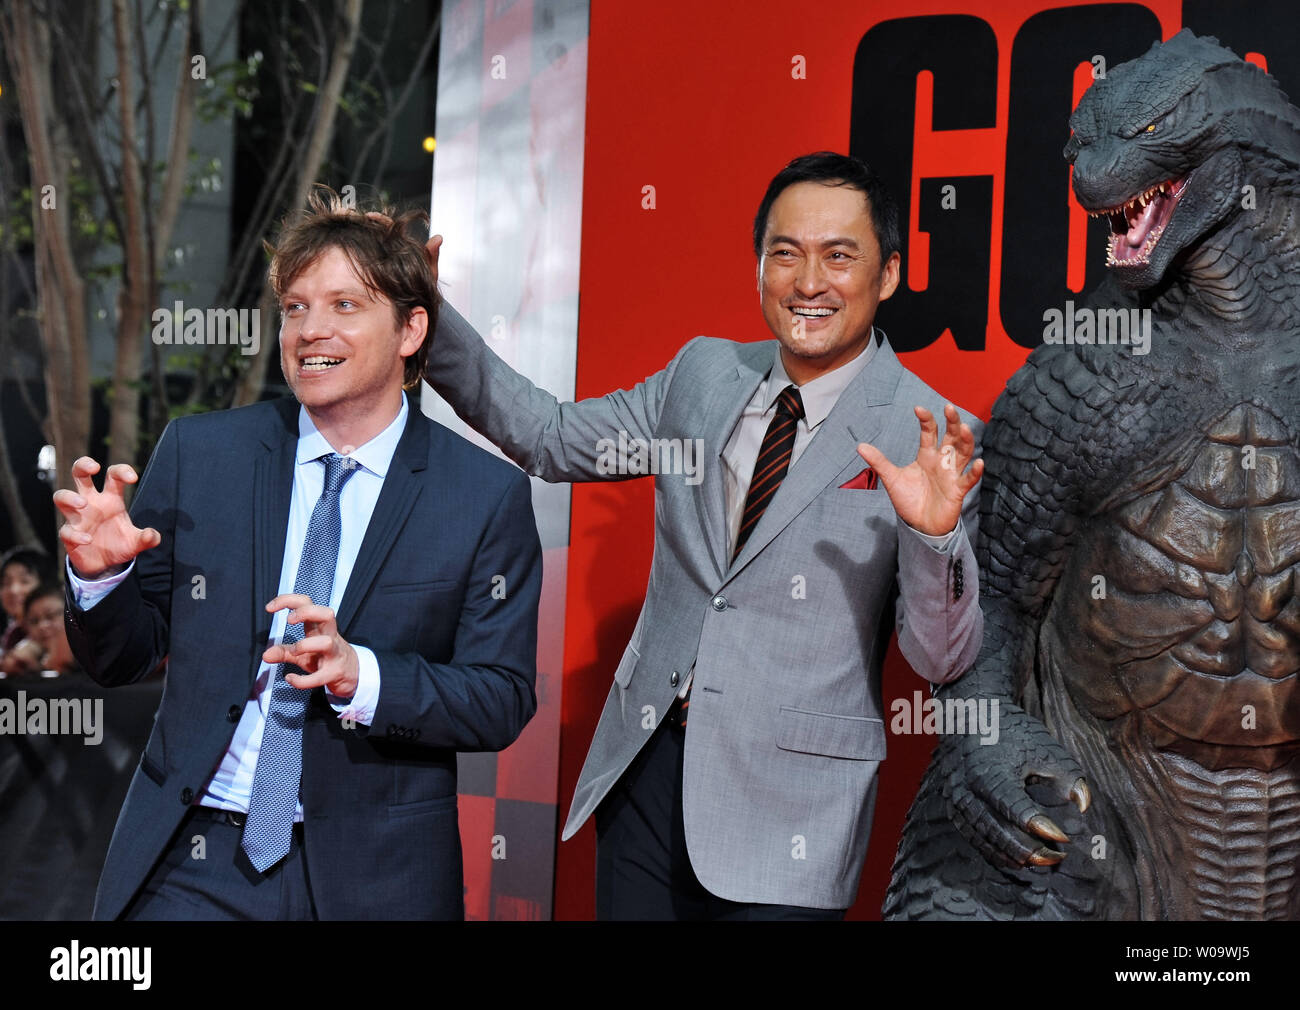 Gareth Edwards Directeur(L) et l'acteur japonais Ken Watanabe Japon assister à une première pour le film 'Godzilla' à Tokyo, Japon, le 10 juillet 2014. UPI/Keizo Mori Banque D'Images